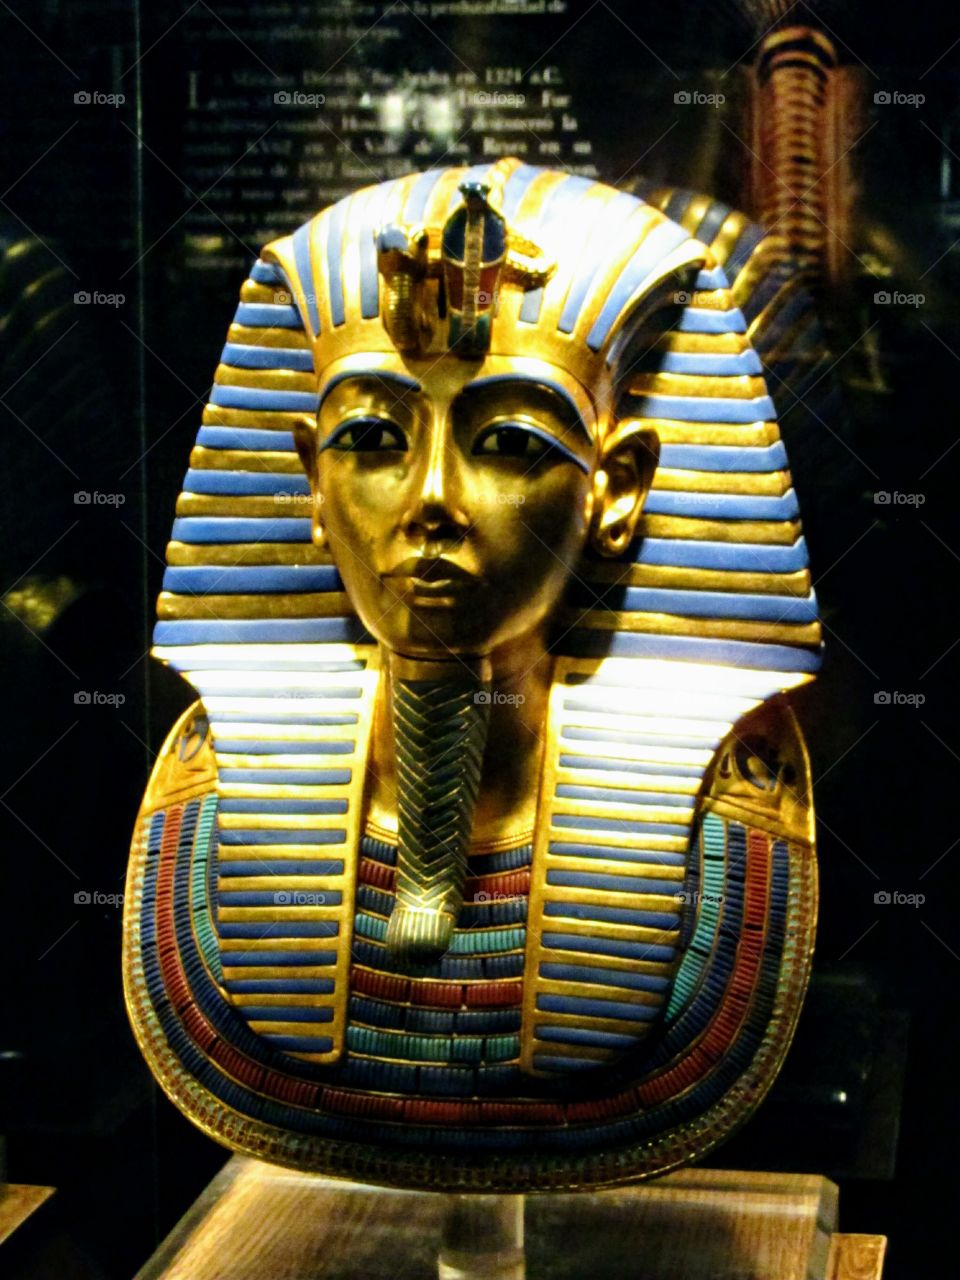 Tutankamon's mask